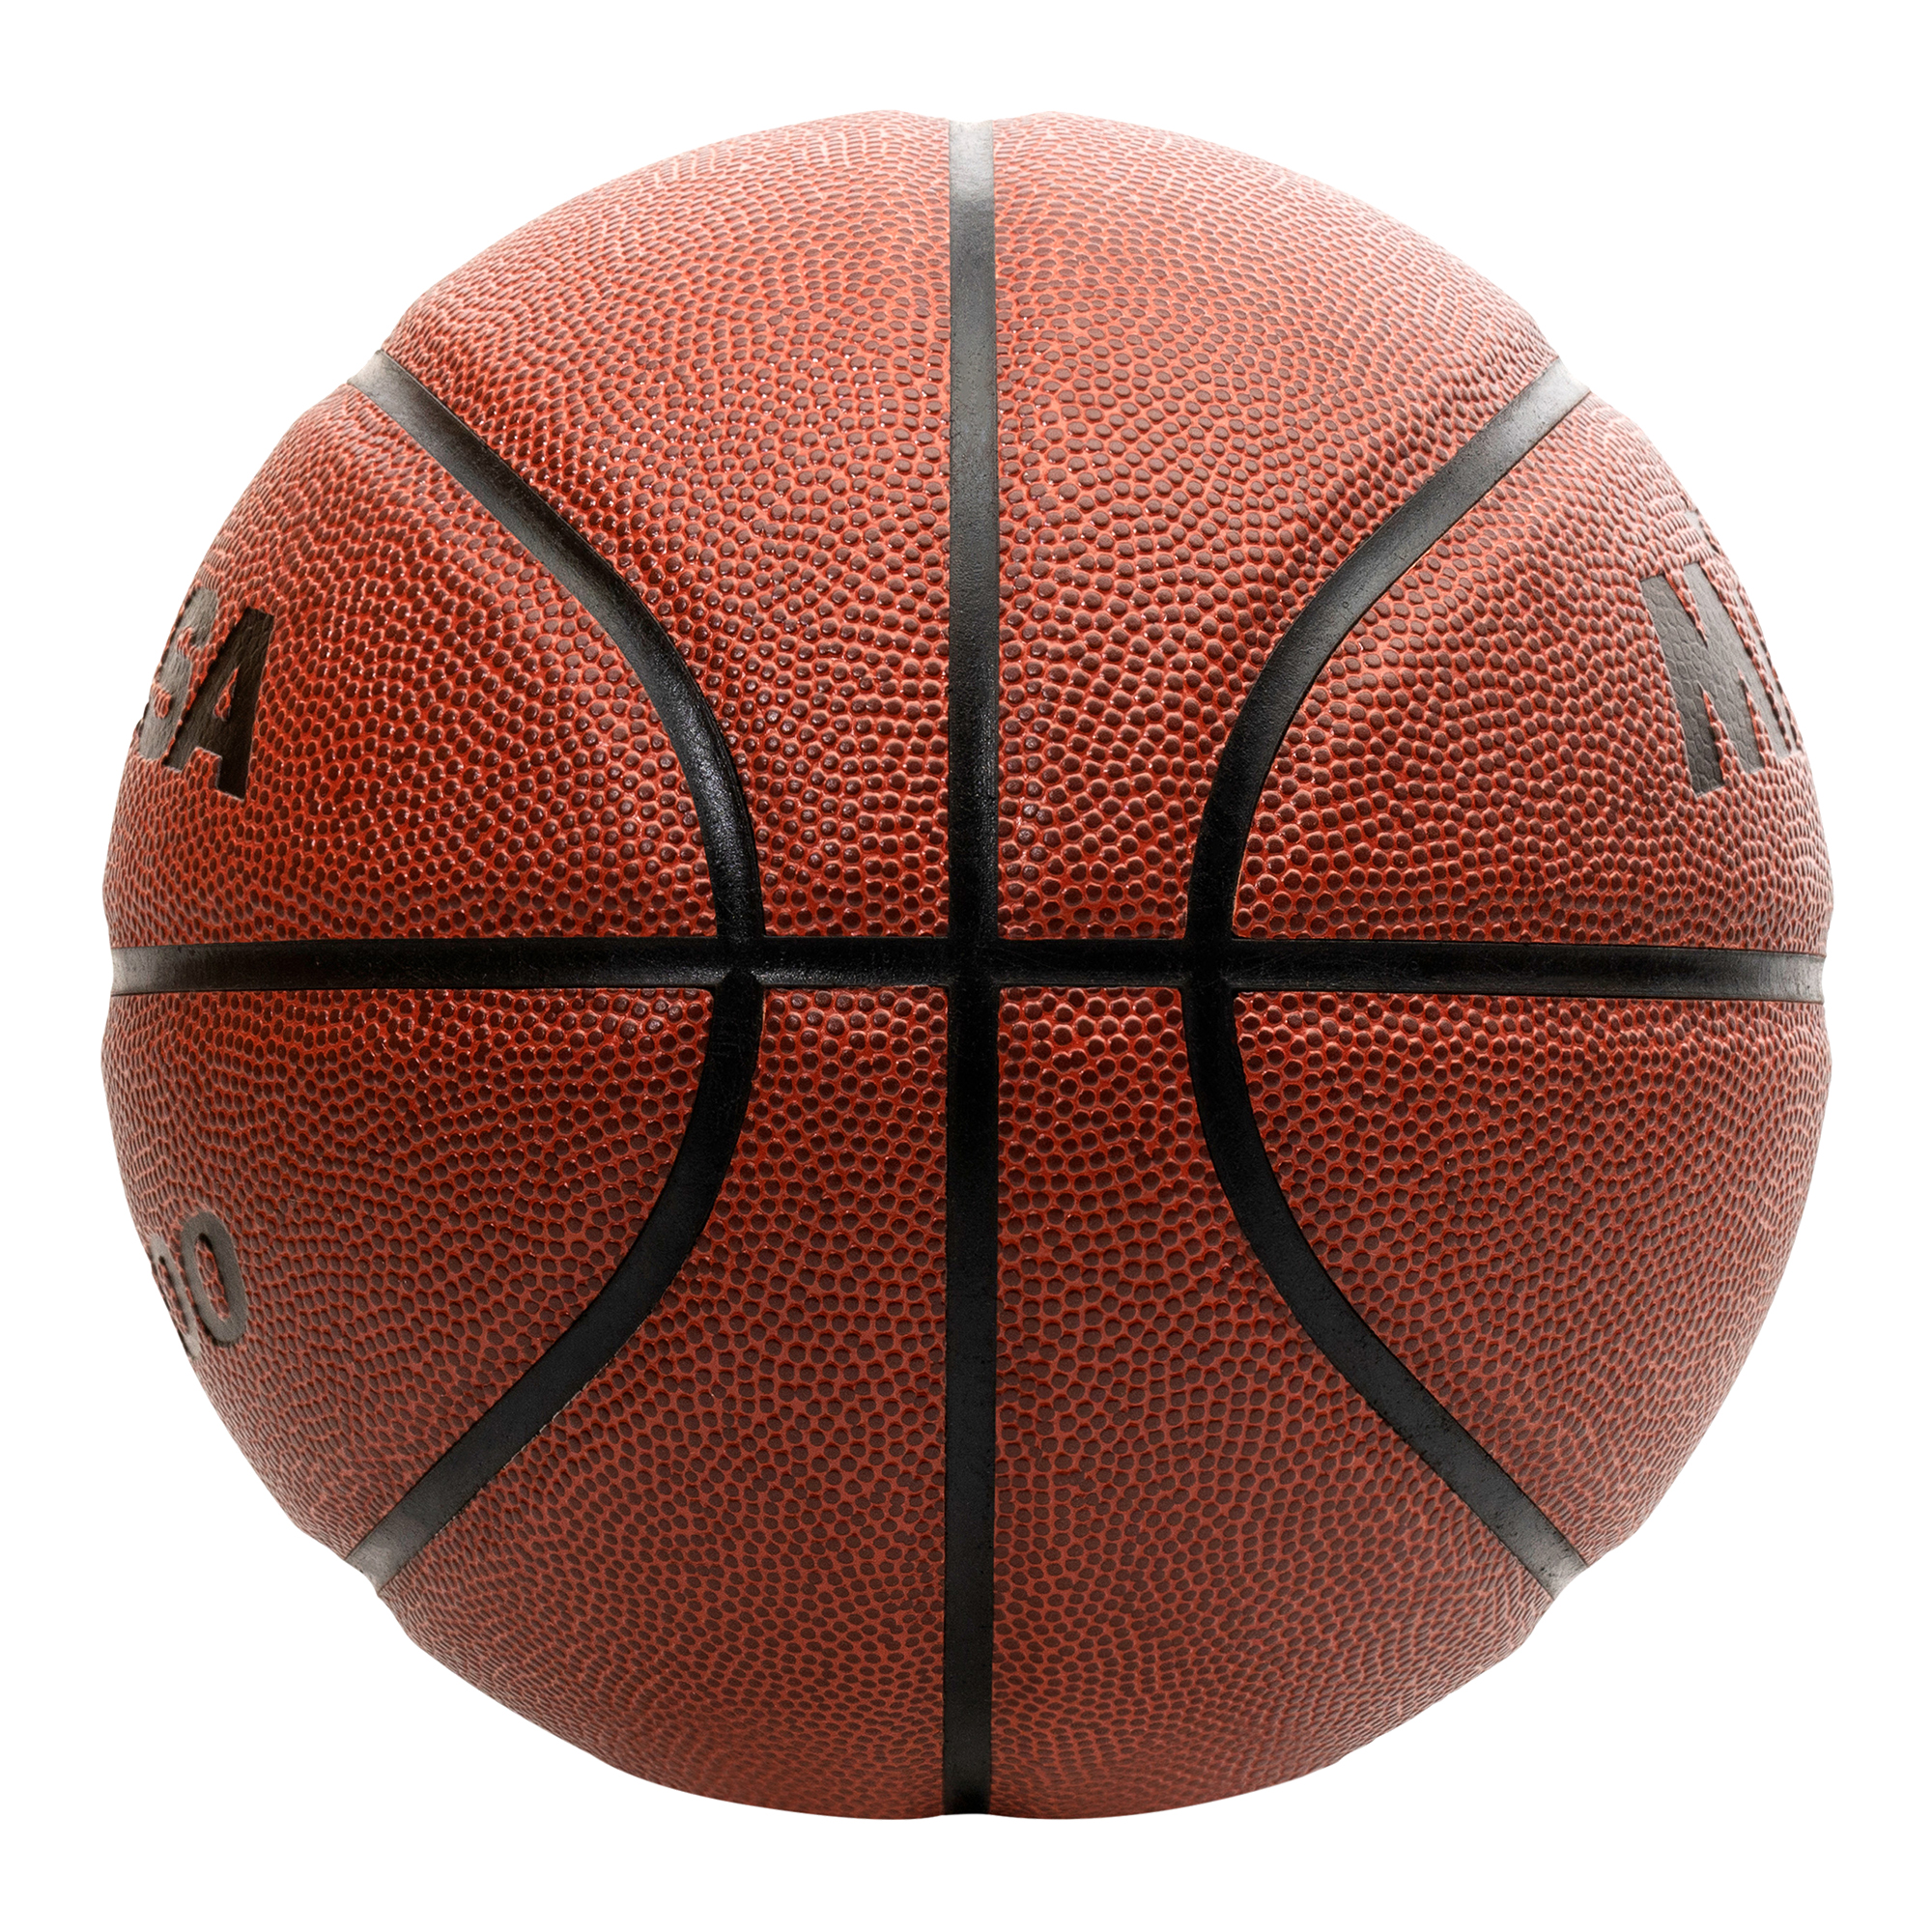 Mikasa Basketball CF500